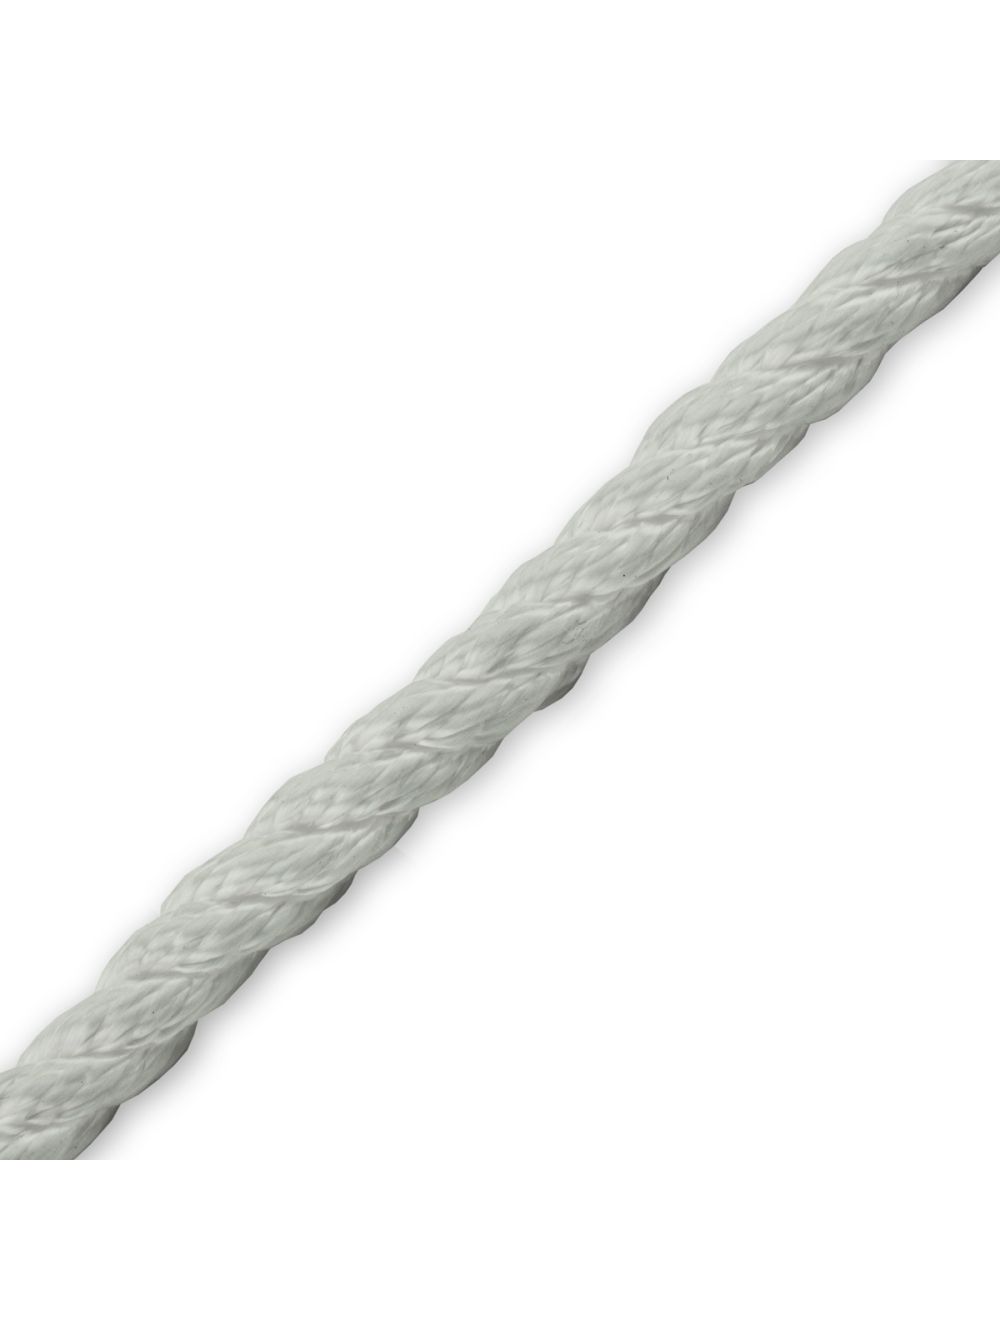 Twisted Nylon Rope 1-1/2